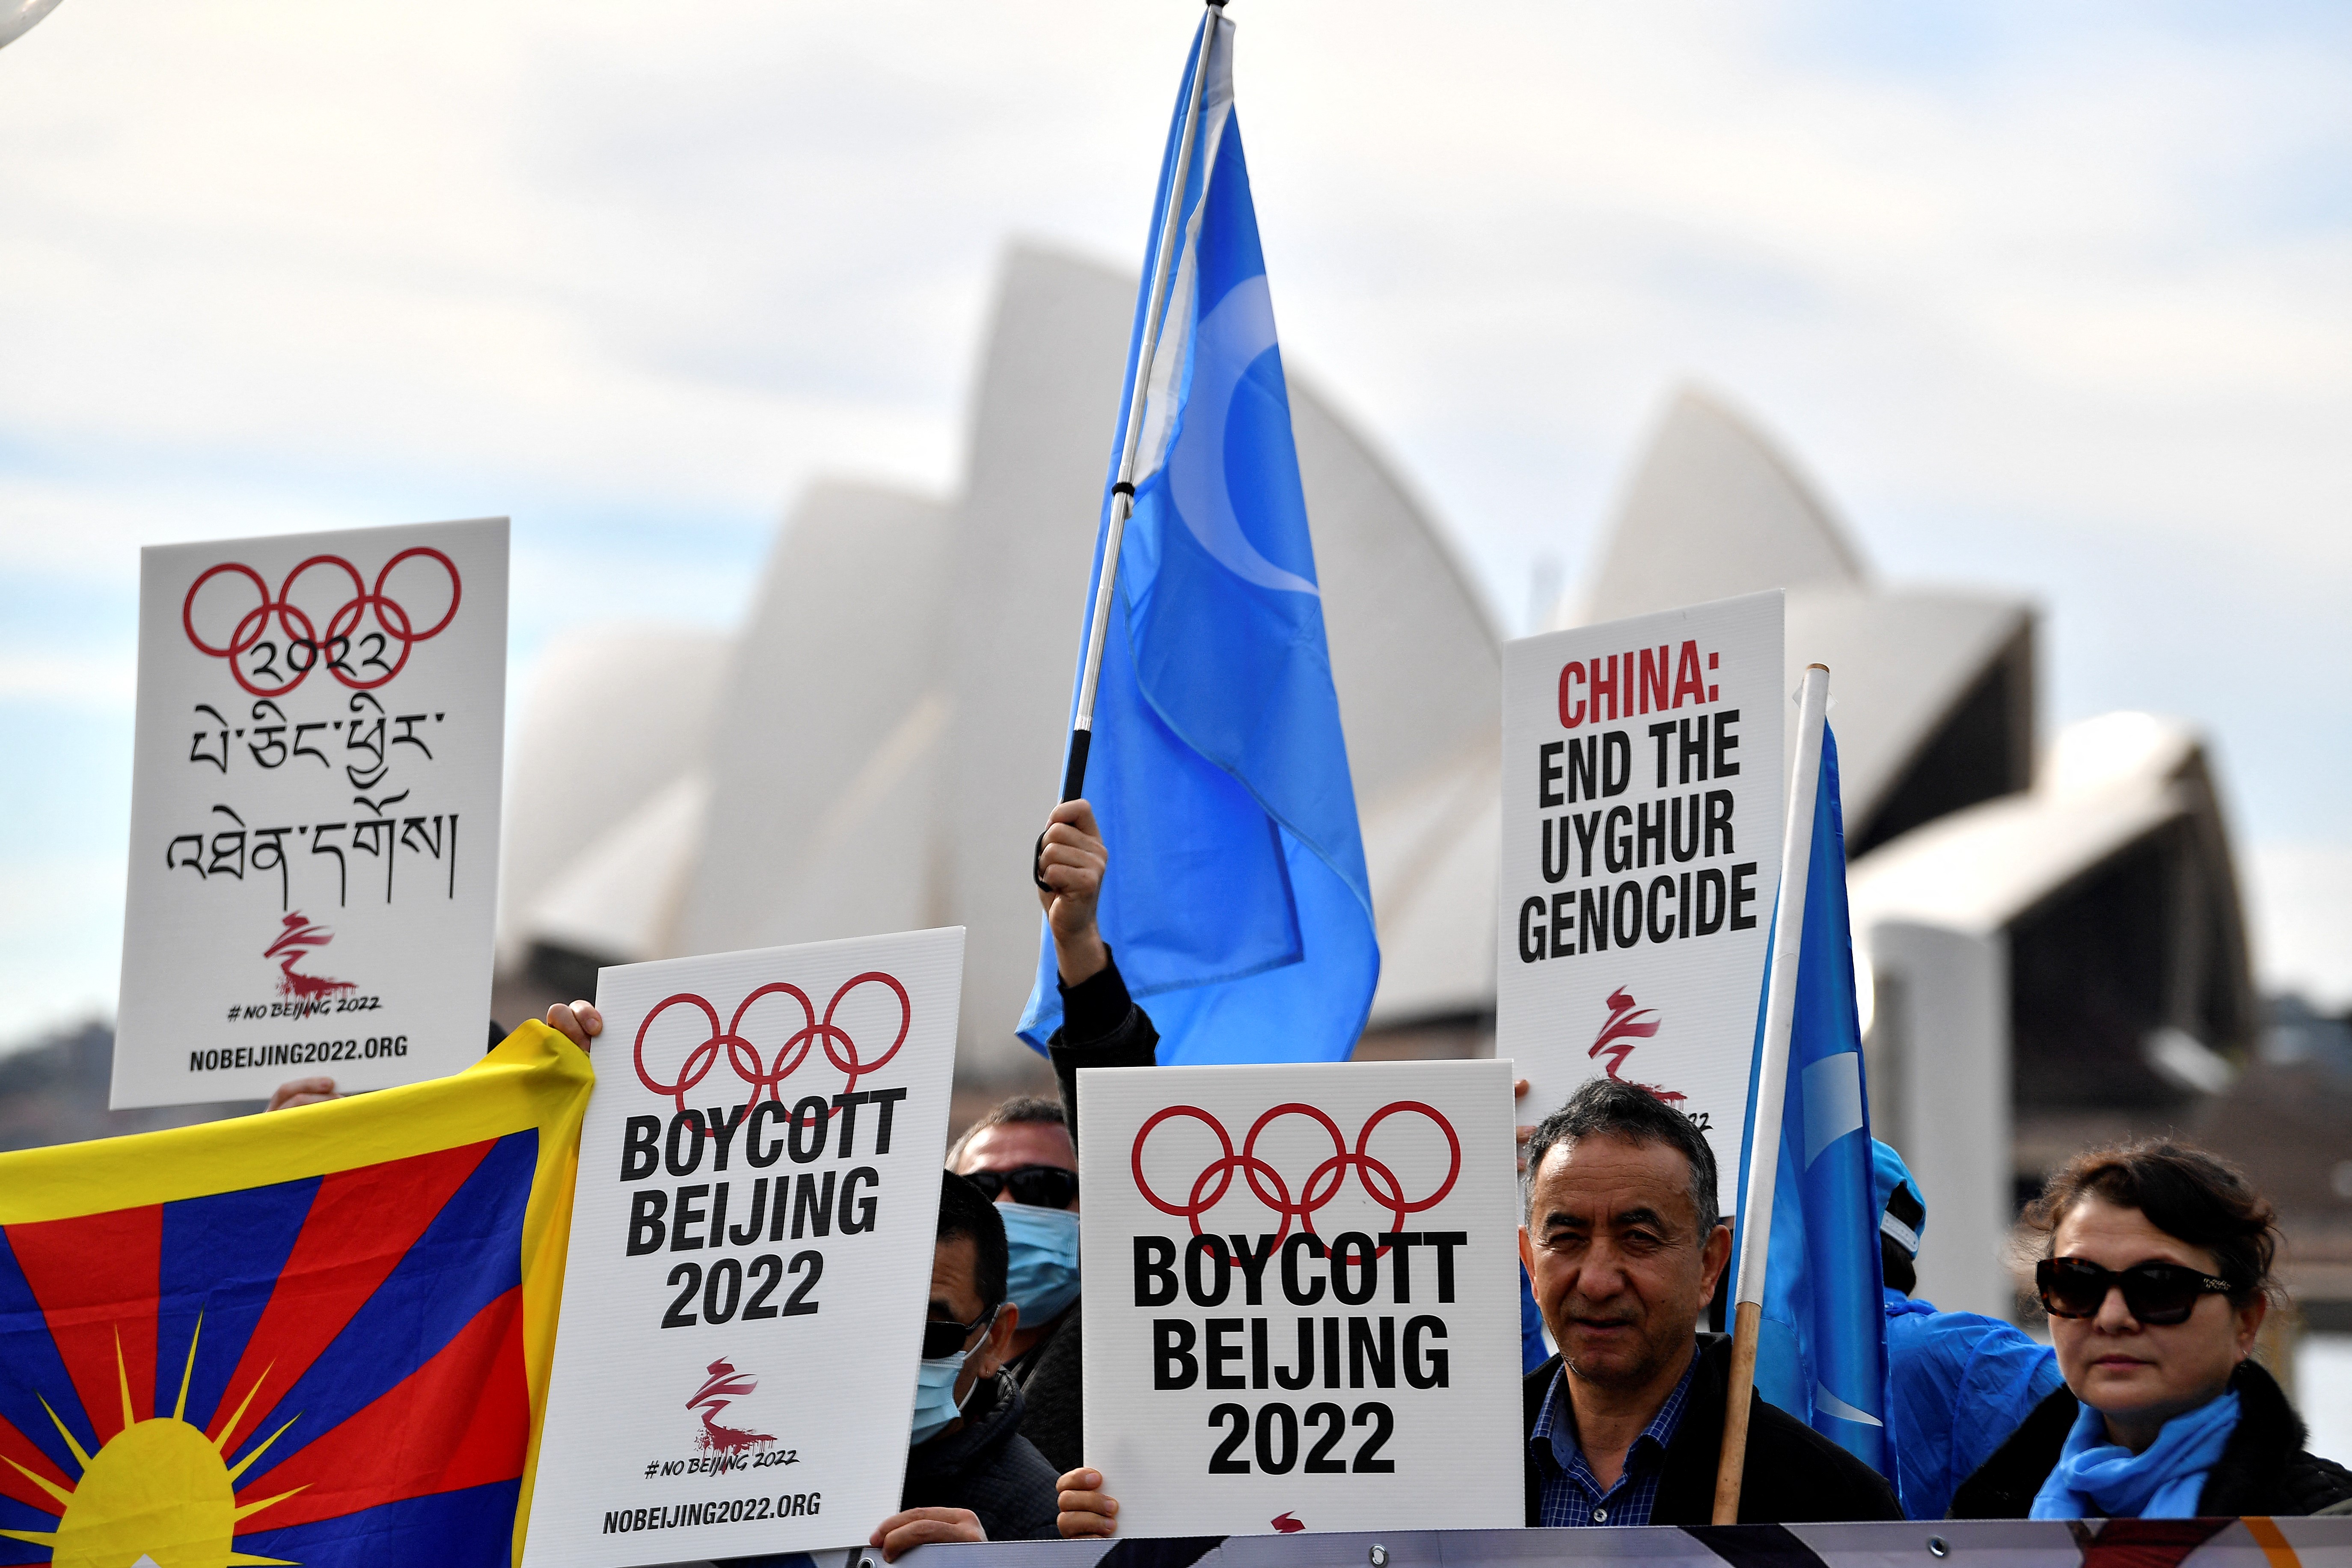 Kanada is csatlakozik az amerikaiak diplomáciai bojkottjához a pekingi téli olimpián, Franciaország egyelőre kivár